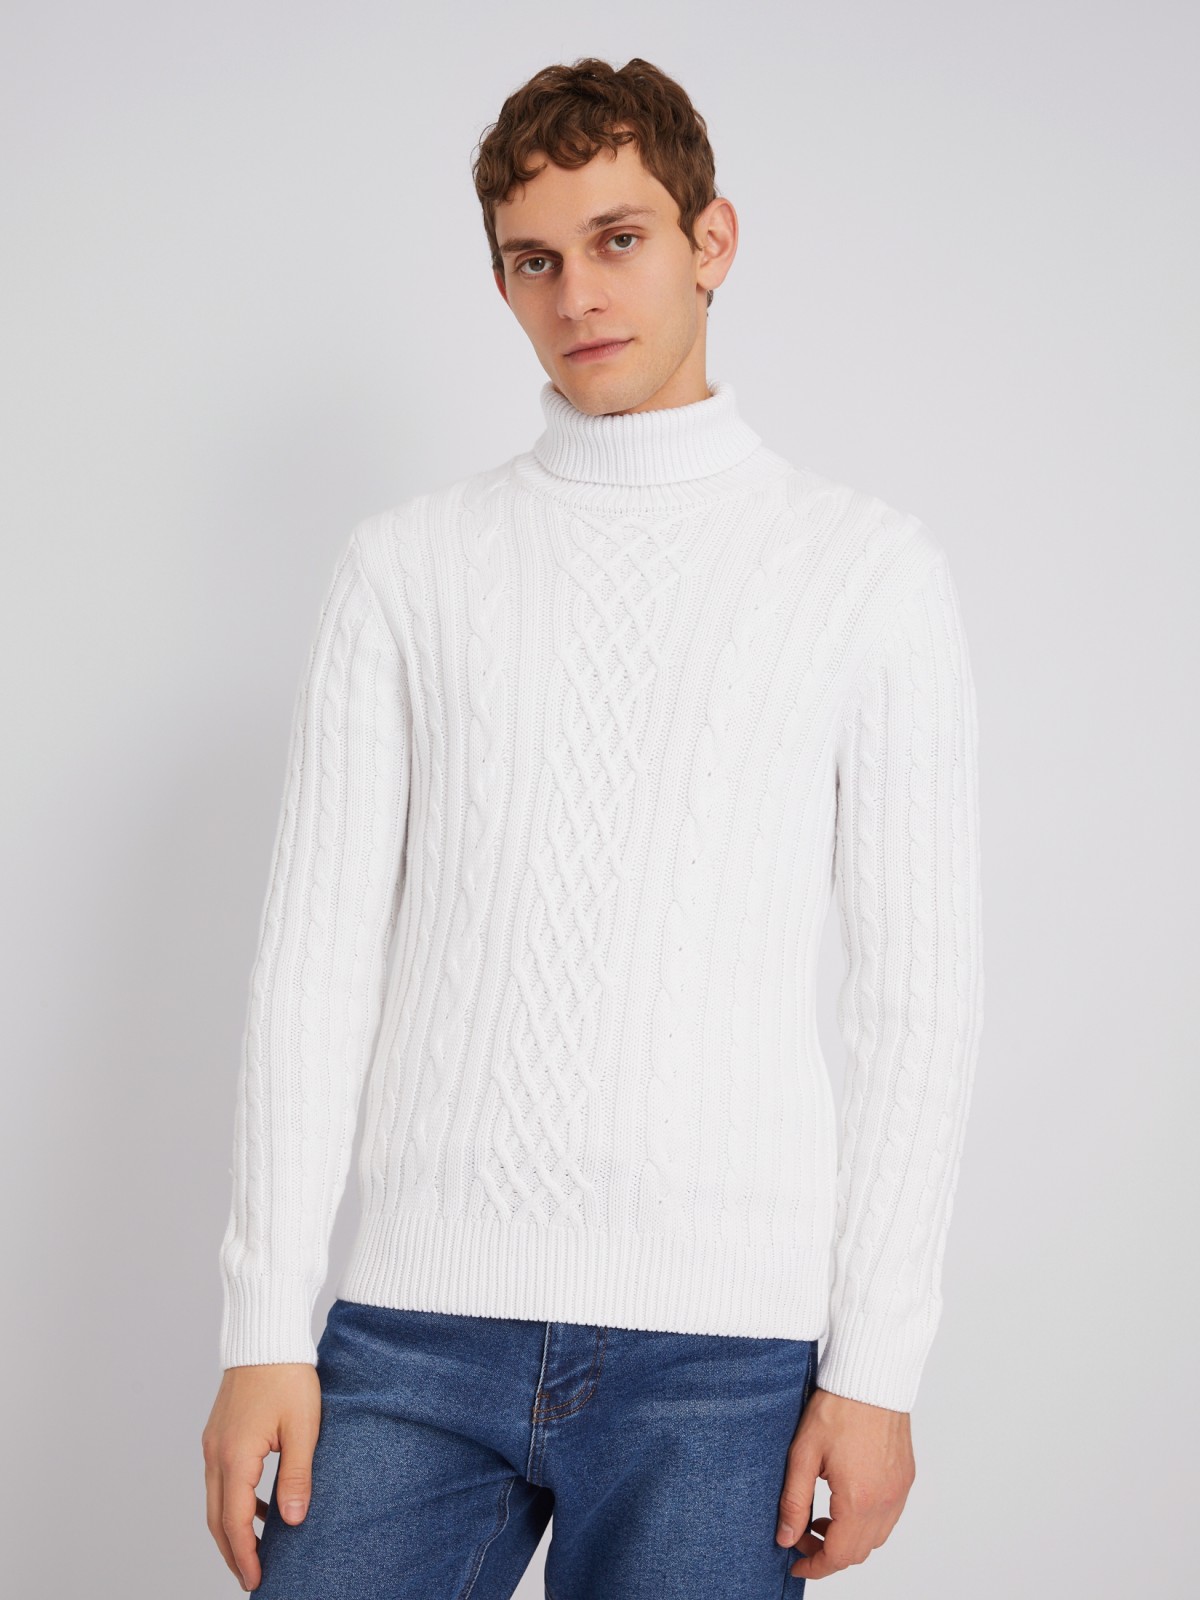 Вязаный свитер с фактурным узором косы zolla 013446165073, цвет молоко, размер S